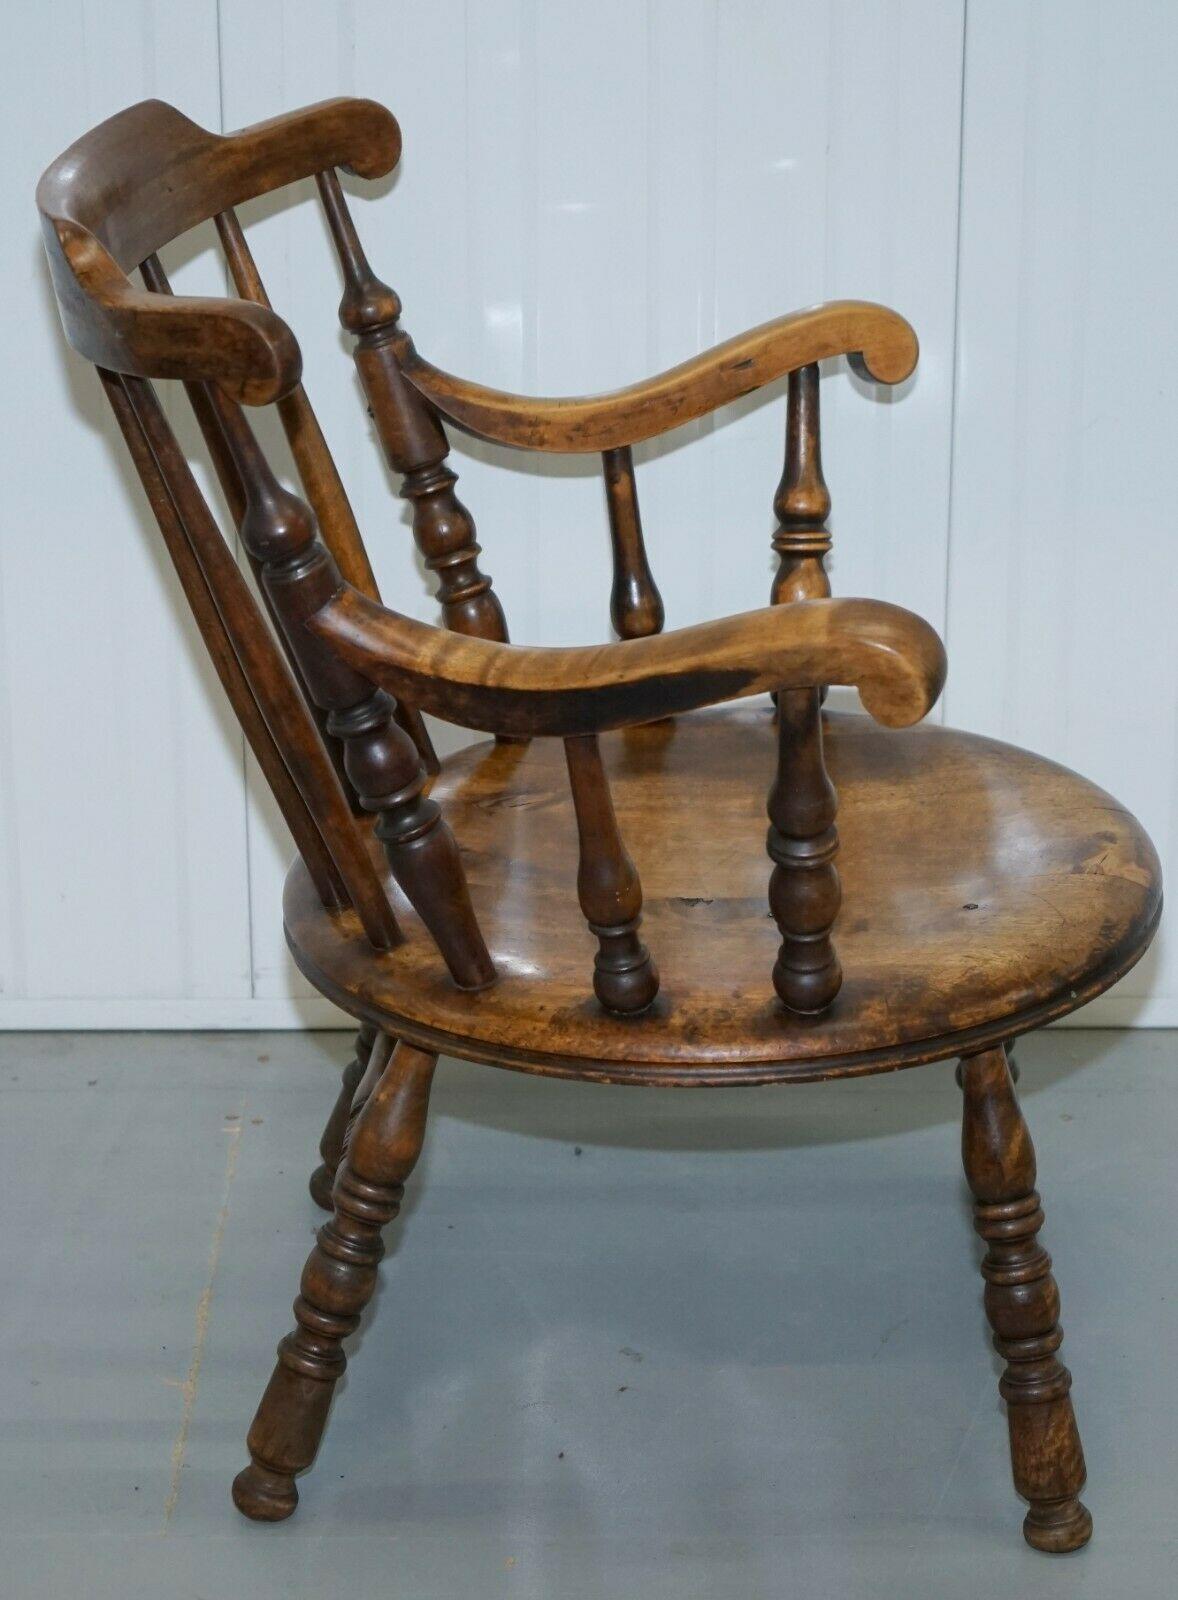 Wir freuen uns, diesen wunderschönen Windsor-Buchenholzstuhl auf Rollenbeinen zum Verkauf anzubieten.

Das ist so ein hübscher kleiner Stuhl. Das Holz, aus dem es gemacht ist, ist einfach schön, beide Vorderbeine scheinen aus verschiedenen